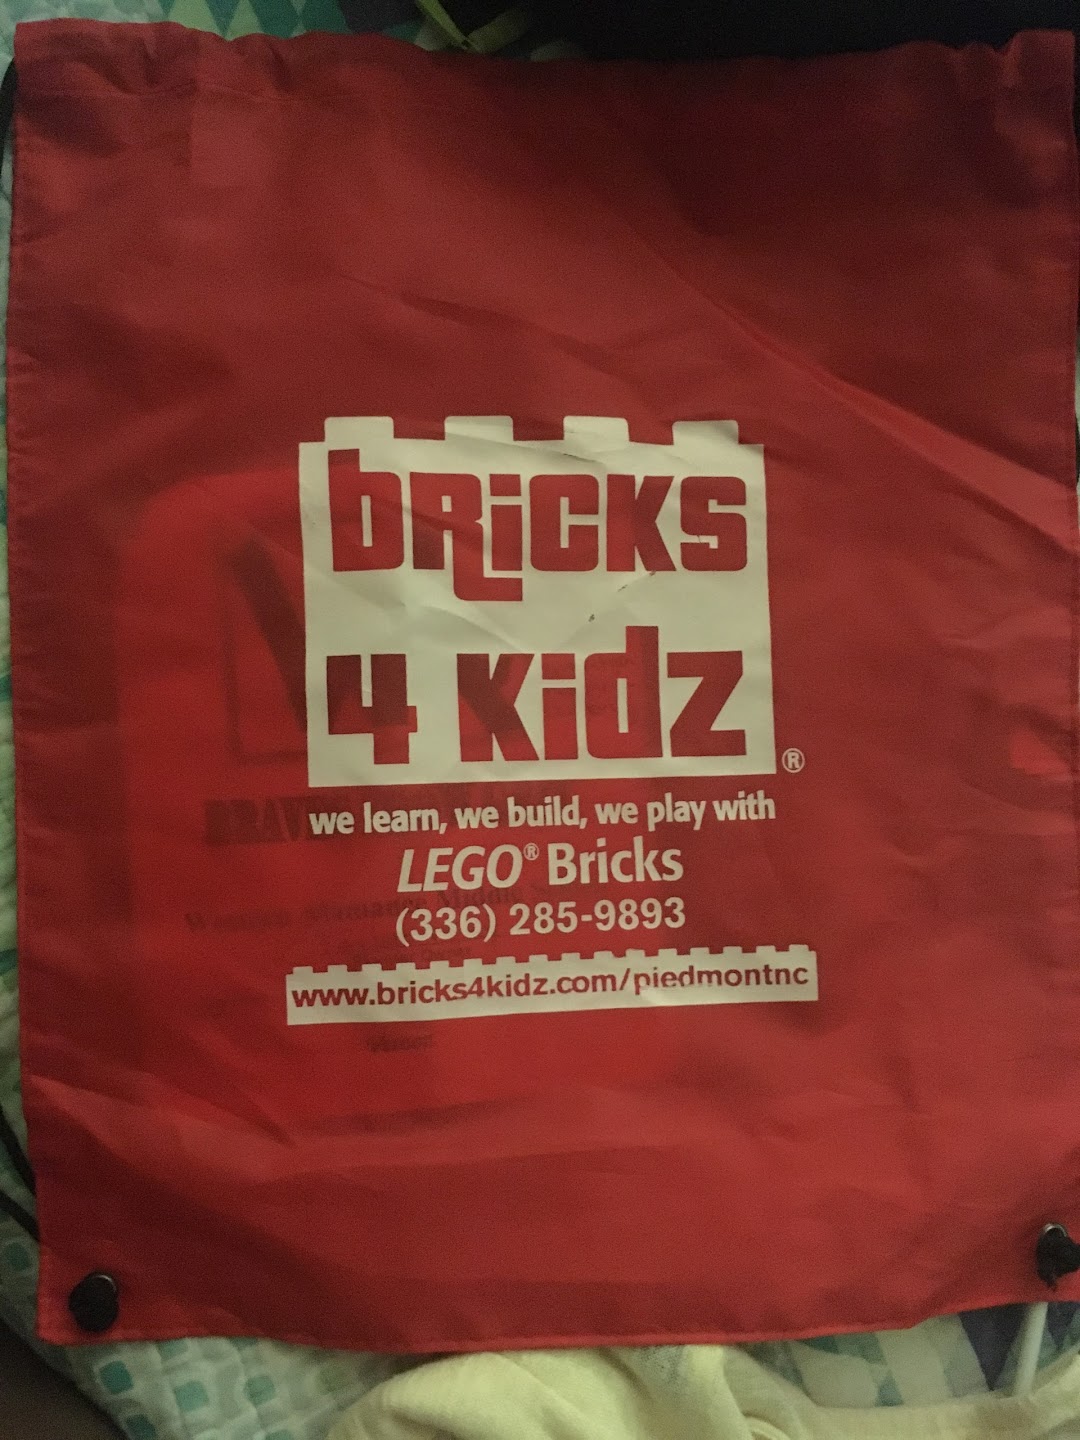 Bricks 4 Kidz Piedmont NC